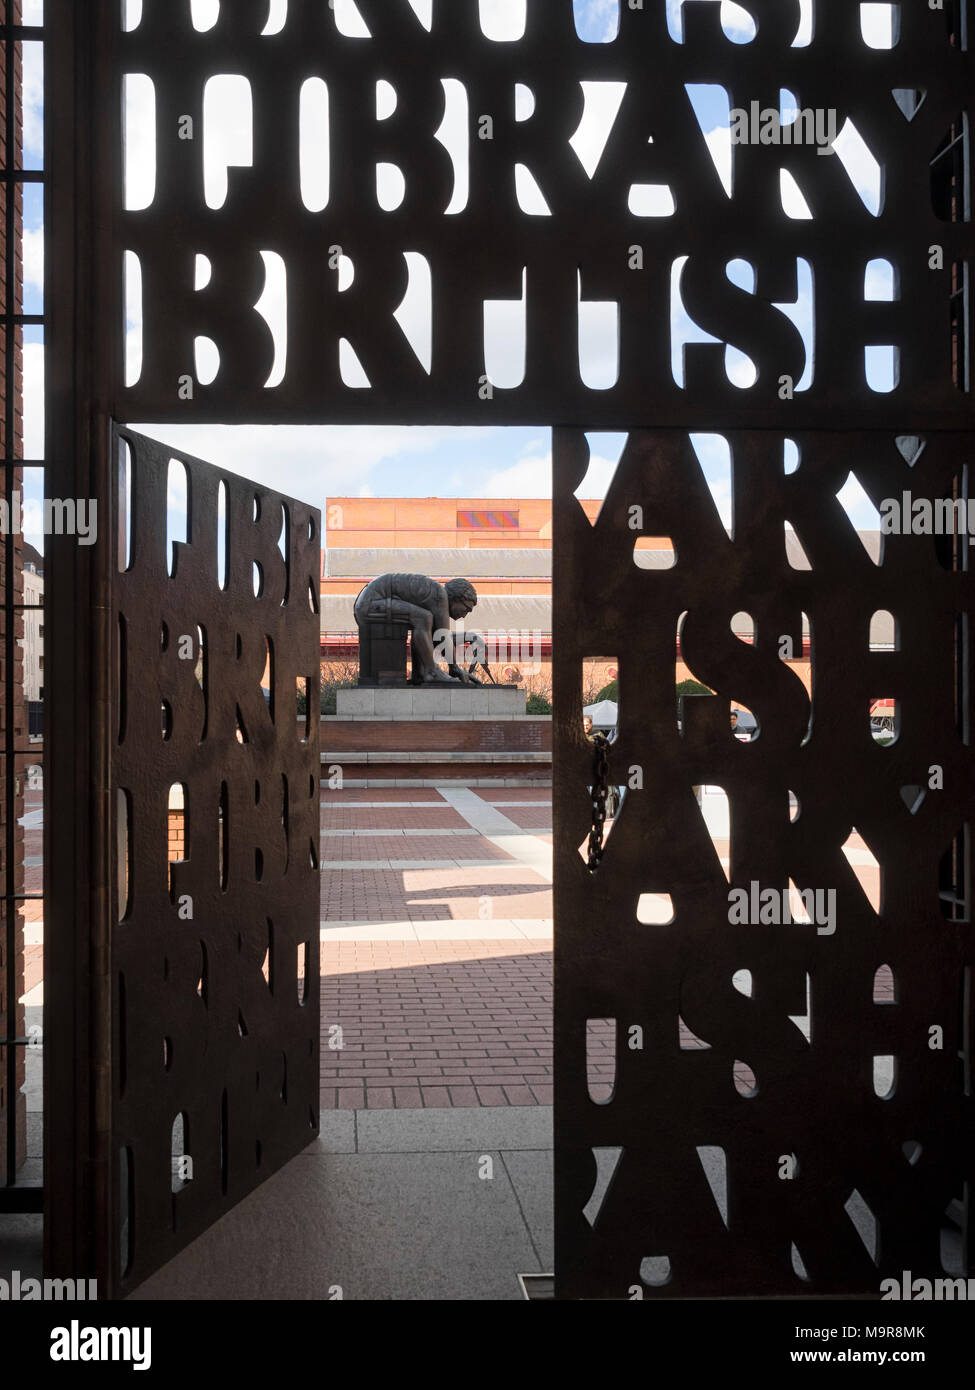 LONDRES, Royaume-Uni - 08 MARS 2018 : porte d'entrée de la bibliothèque britannique.Les portes ont été conçues par Lida et David Kindersley Banque D'Images